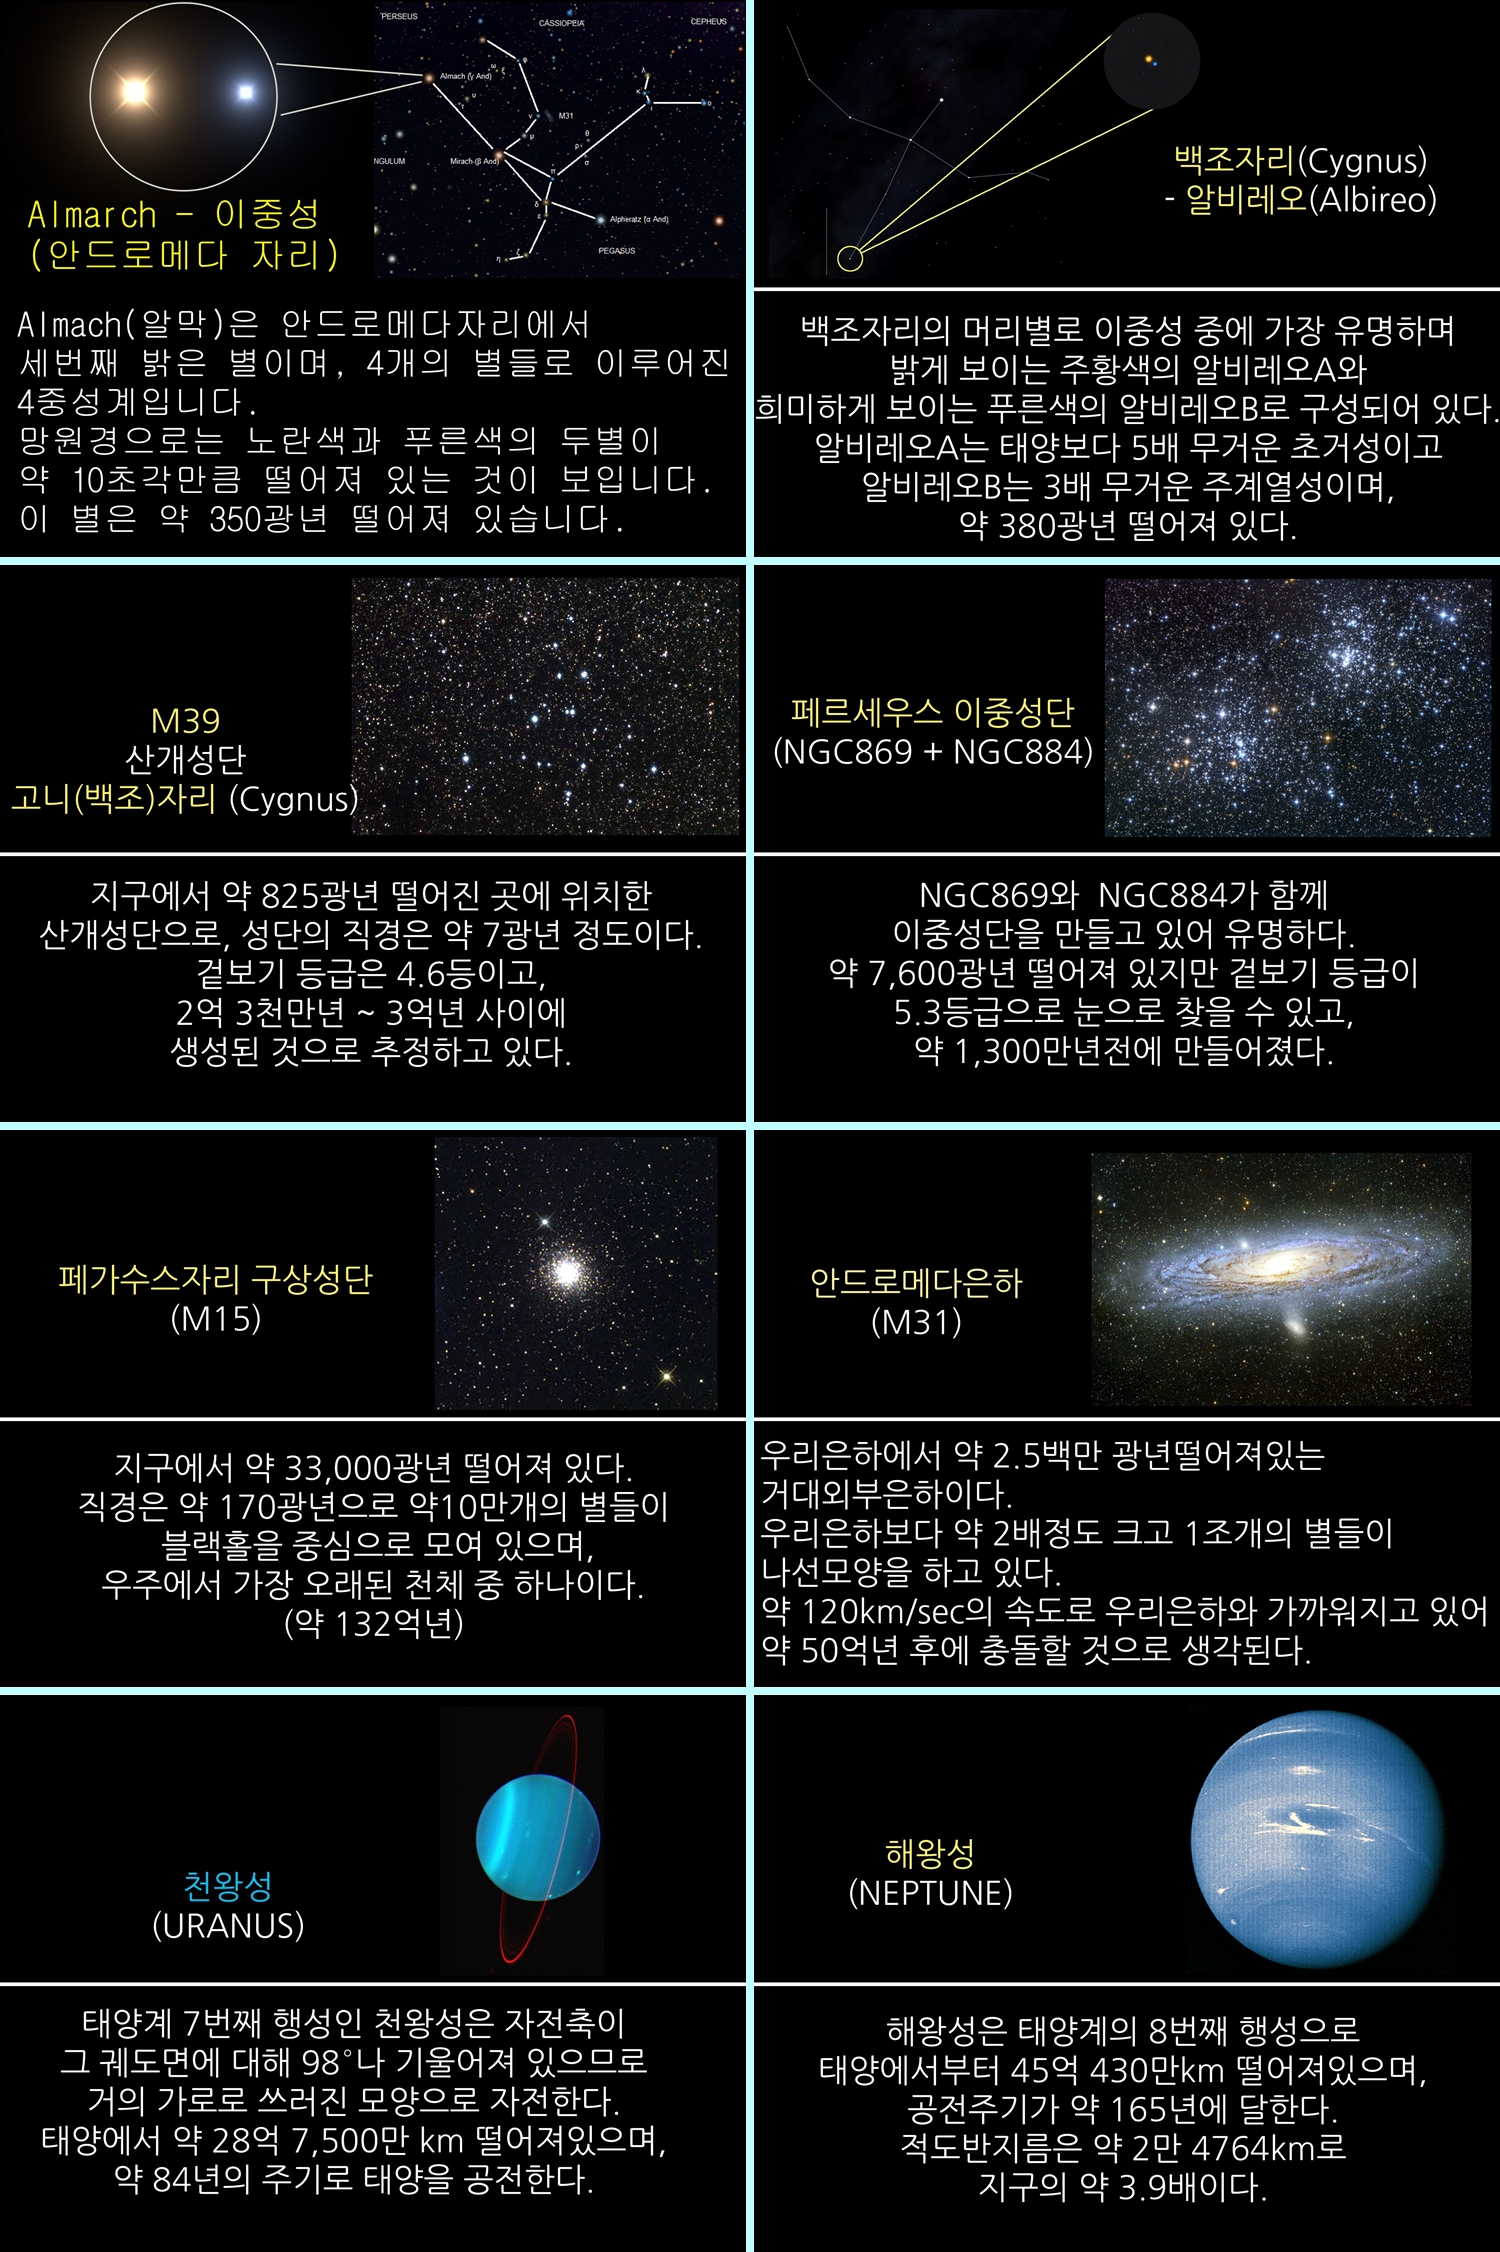 2015년 10월 주요 천체관측 대상